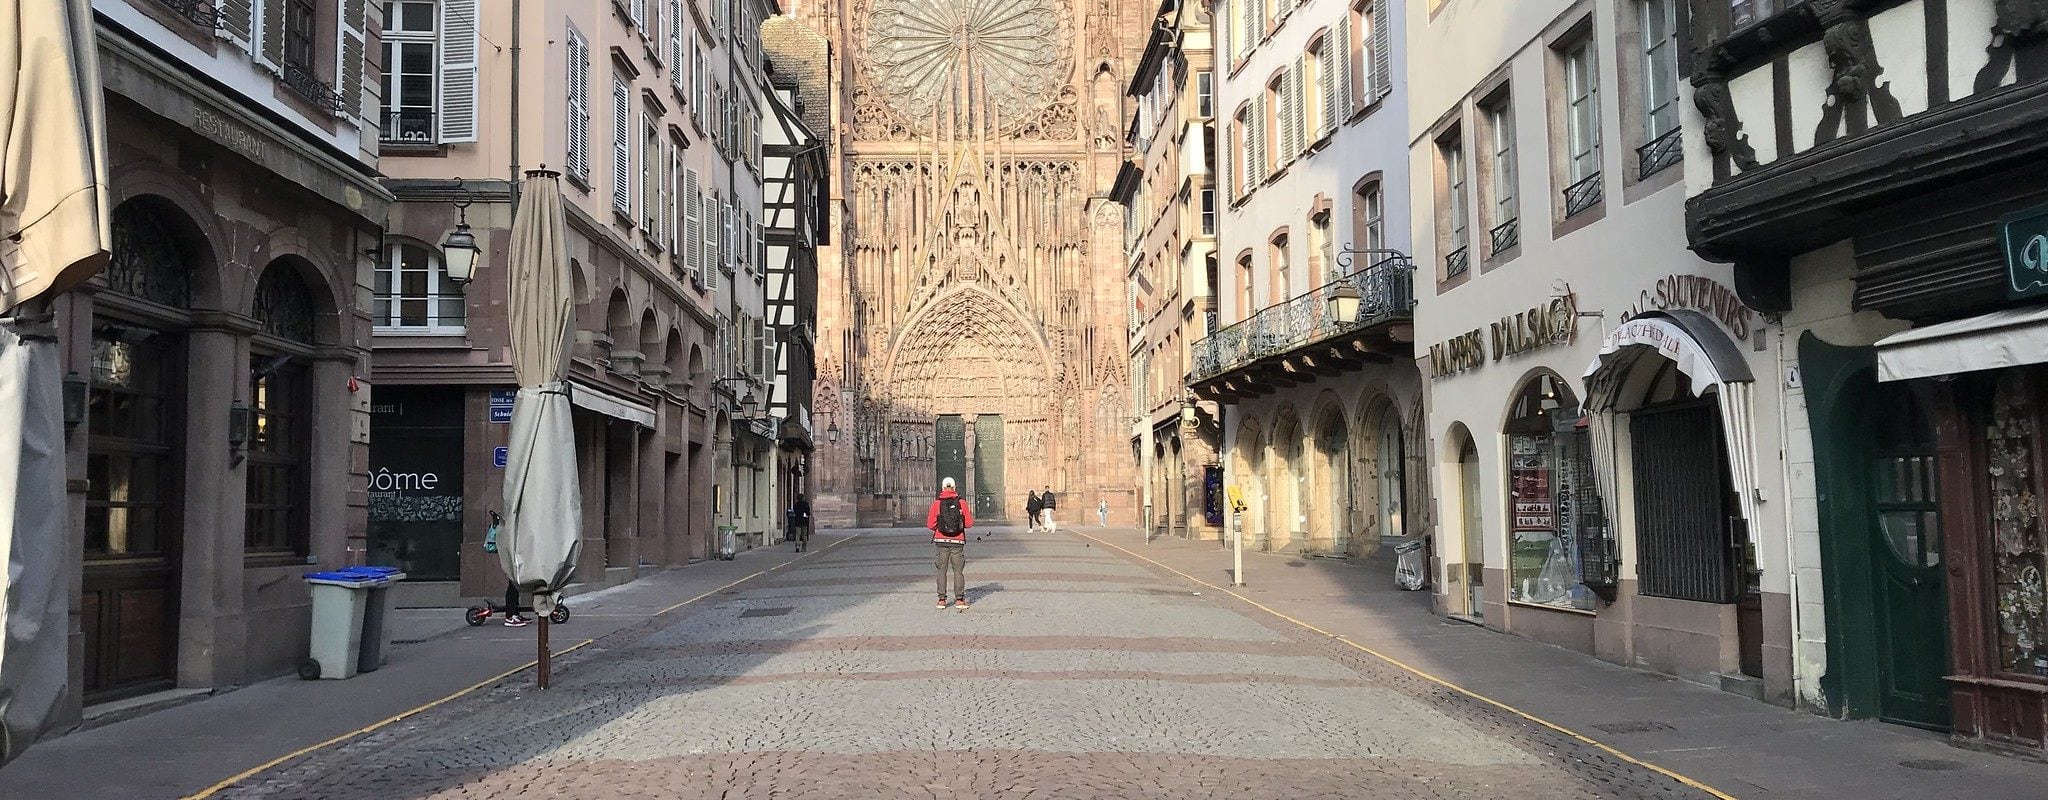 Face au reconfinement, la Ville de Strasbourg se veut rassurante : maintien des services publics et du lien social